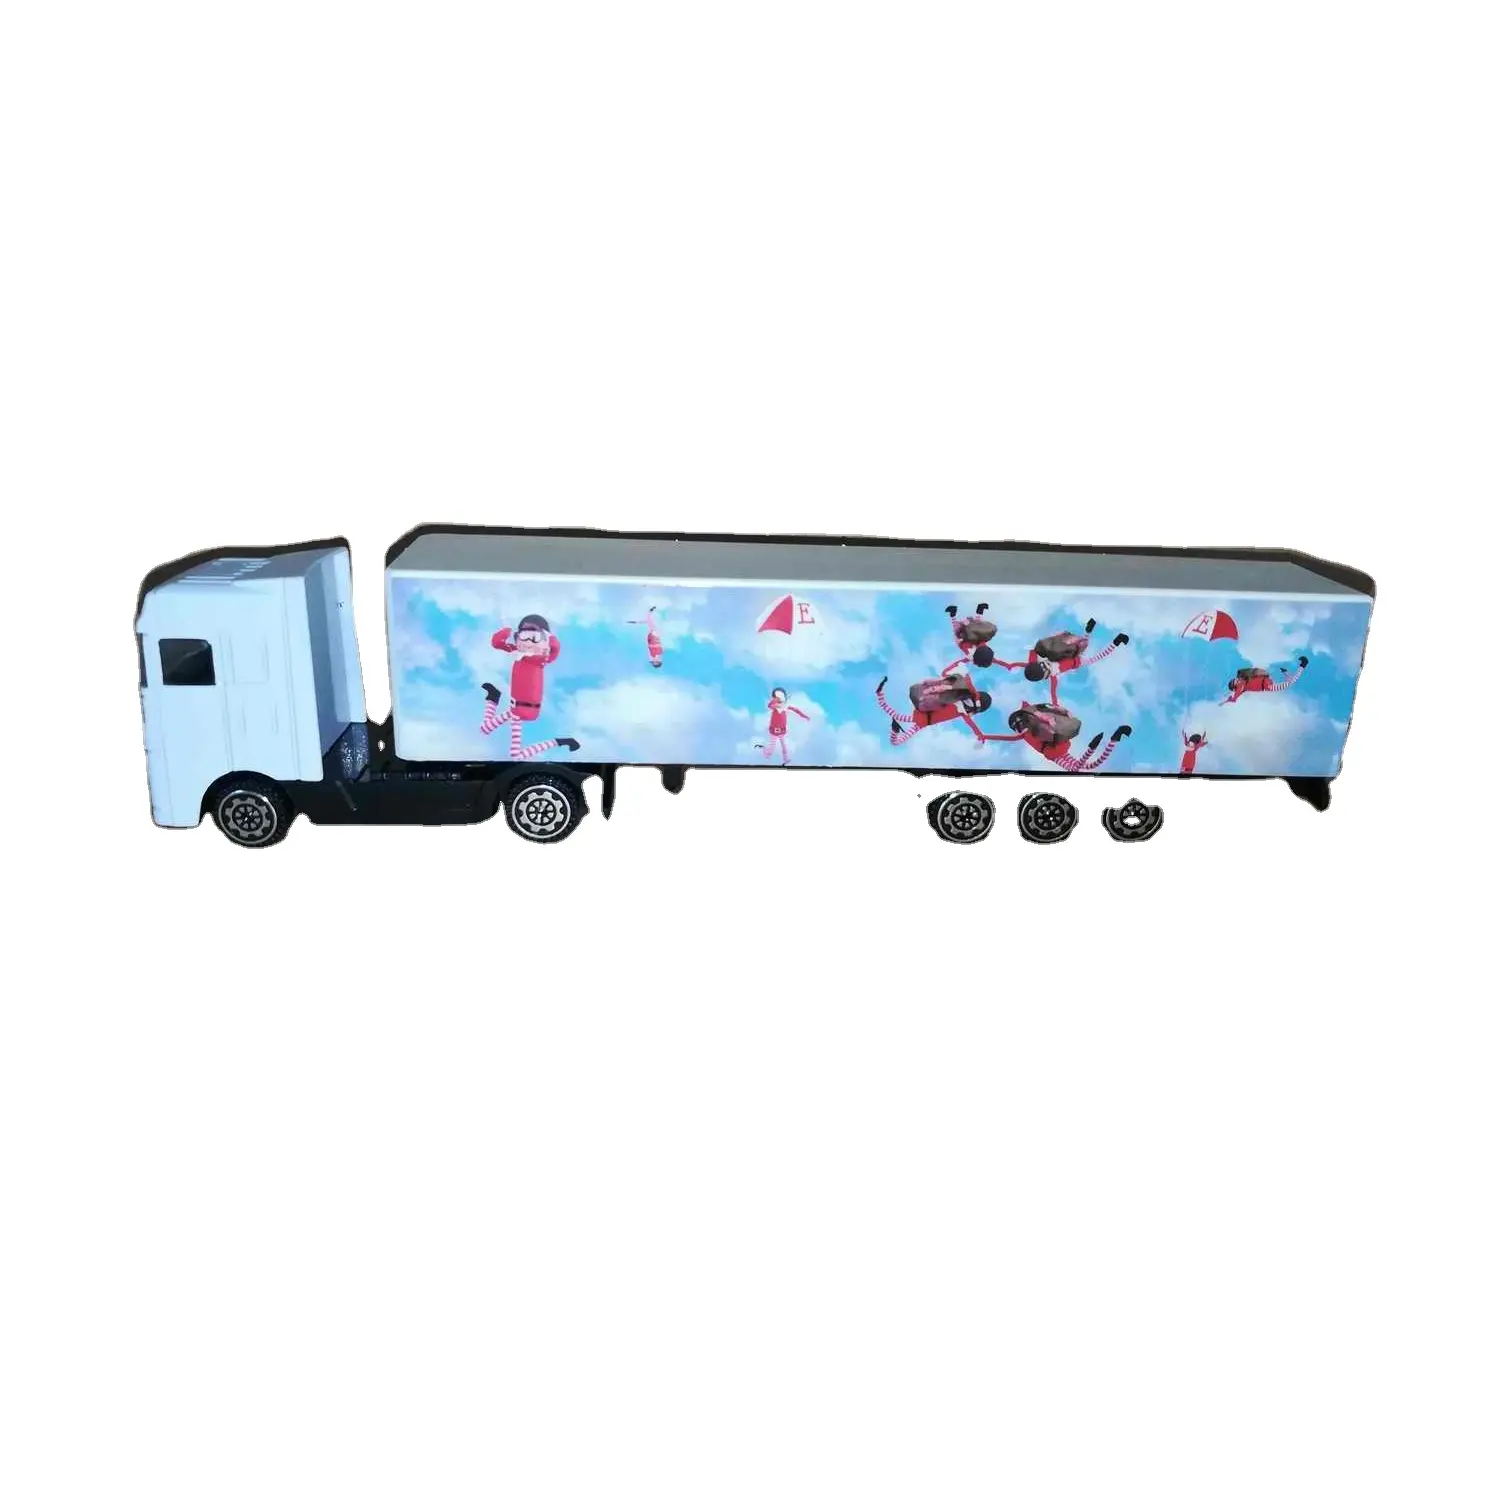 エミュレーションコレクションメタル1:64スケール貨物トラックモデルダイキャスト玩具配送トラック